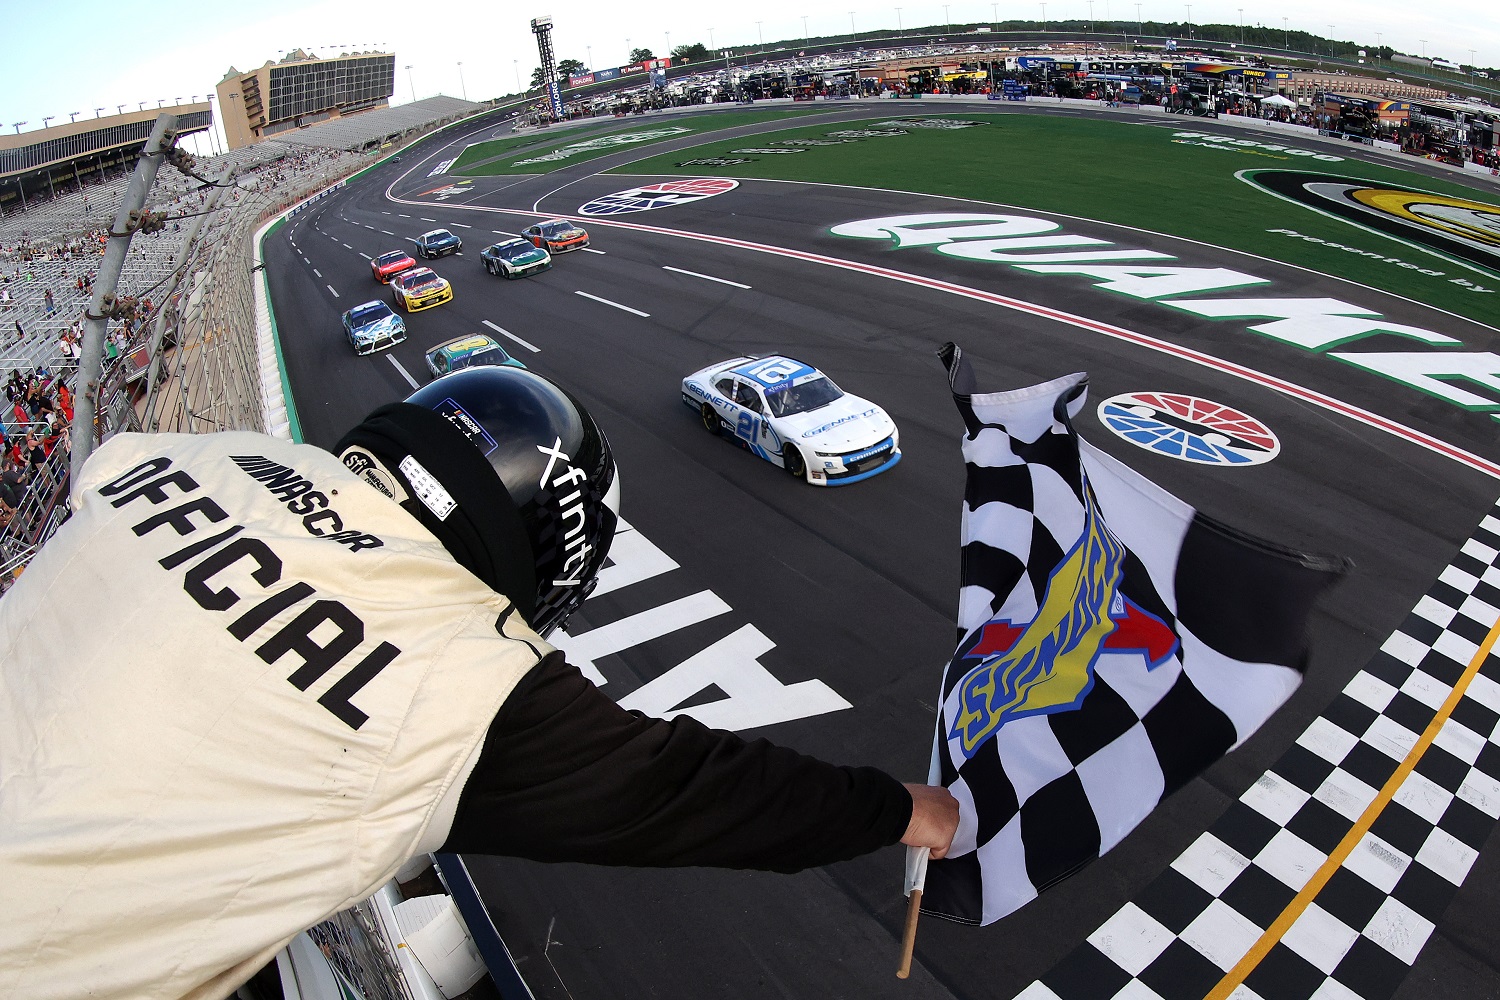 Austin Hill takes the checkered flag to win the NASCAR Xfinity Series Alsco Uniforms 250 at Atlanta Motor Speedway on July 9, 2022 in Hampton, Georgia.